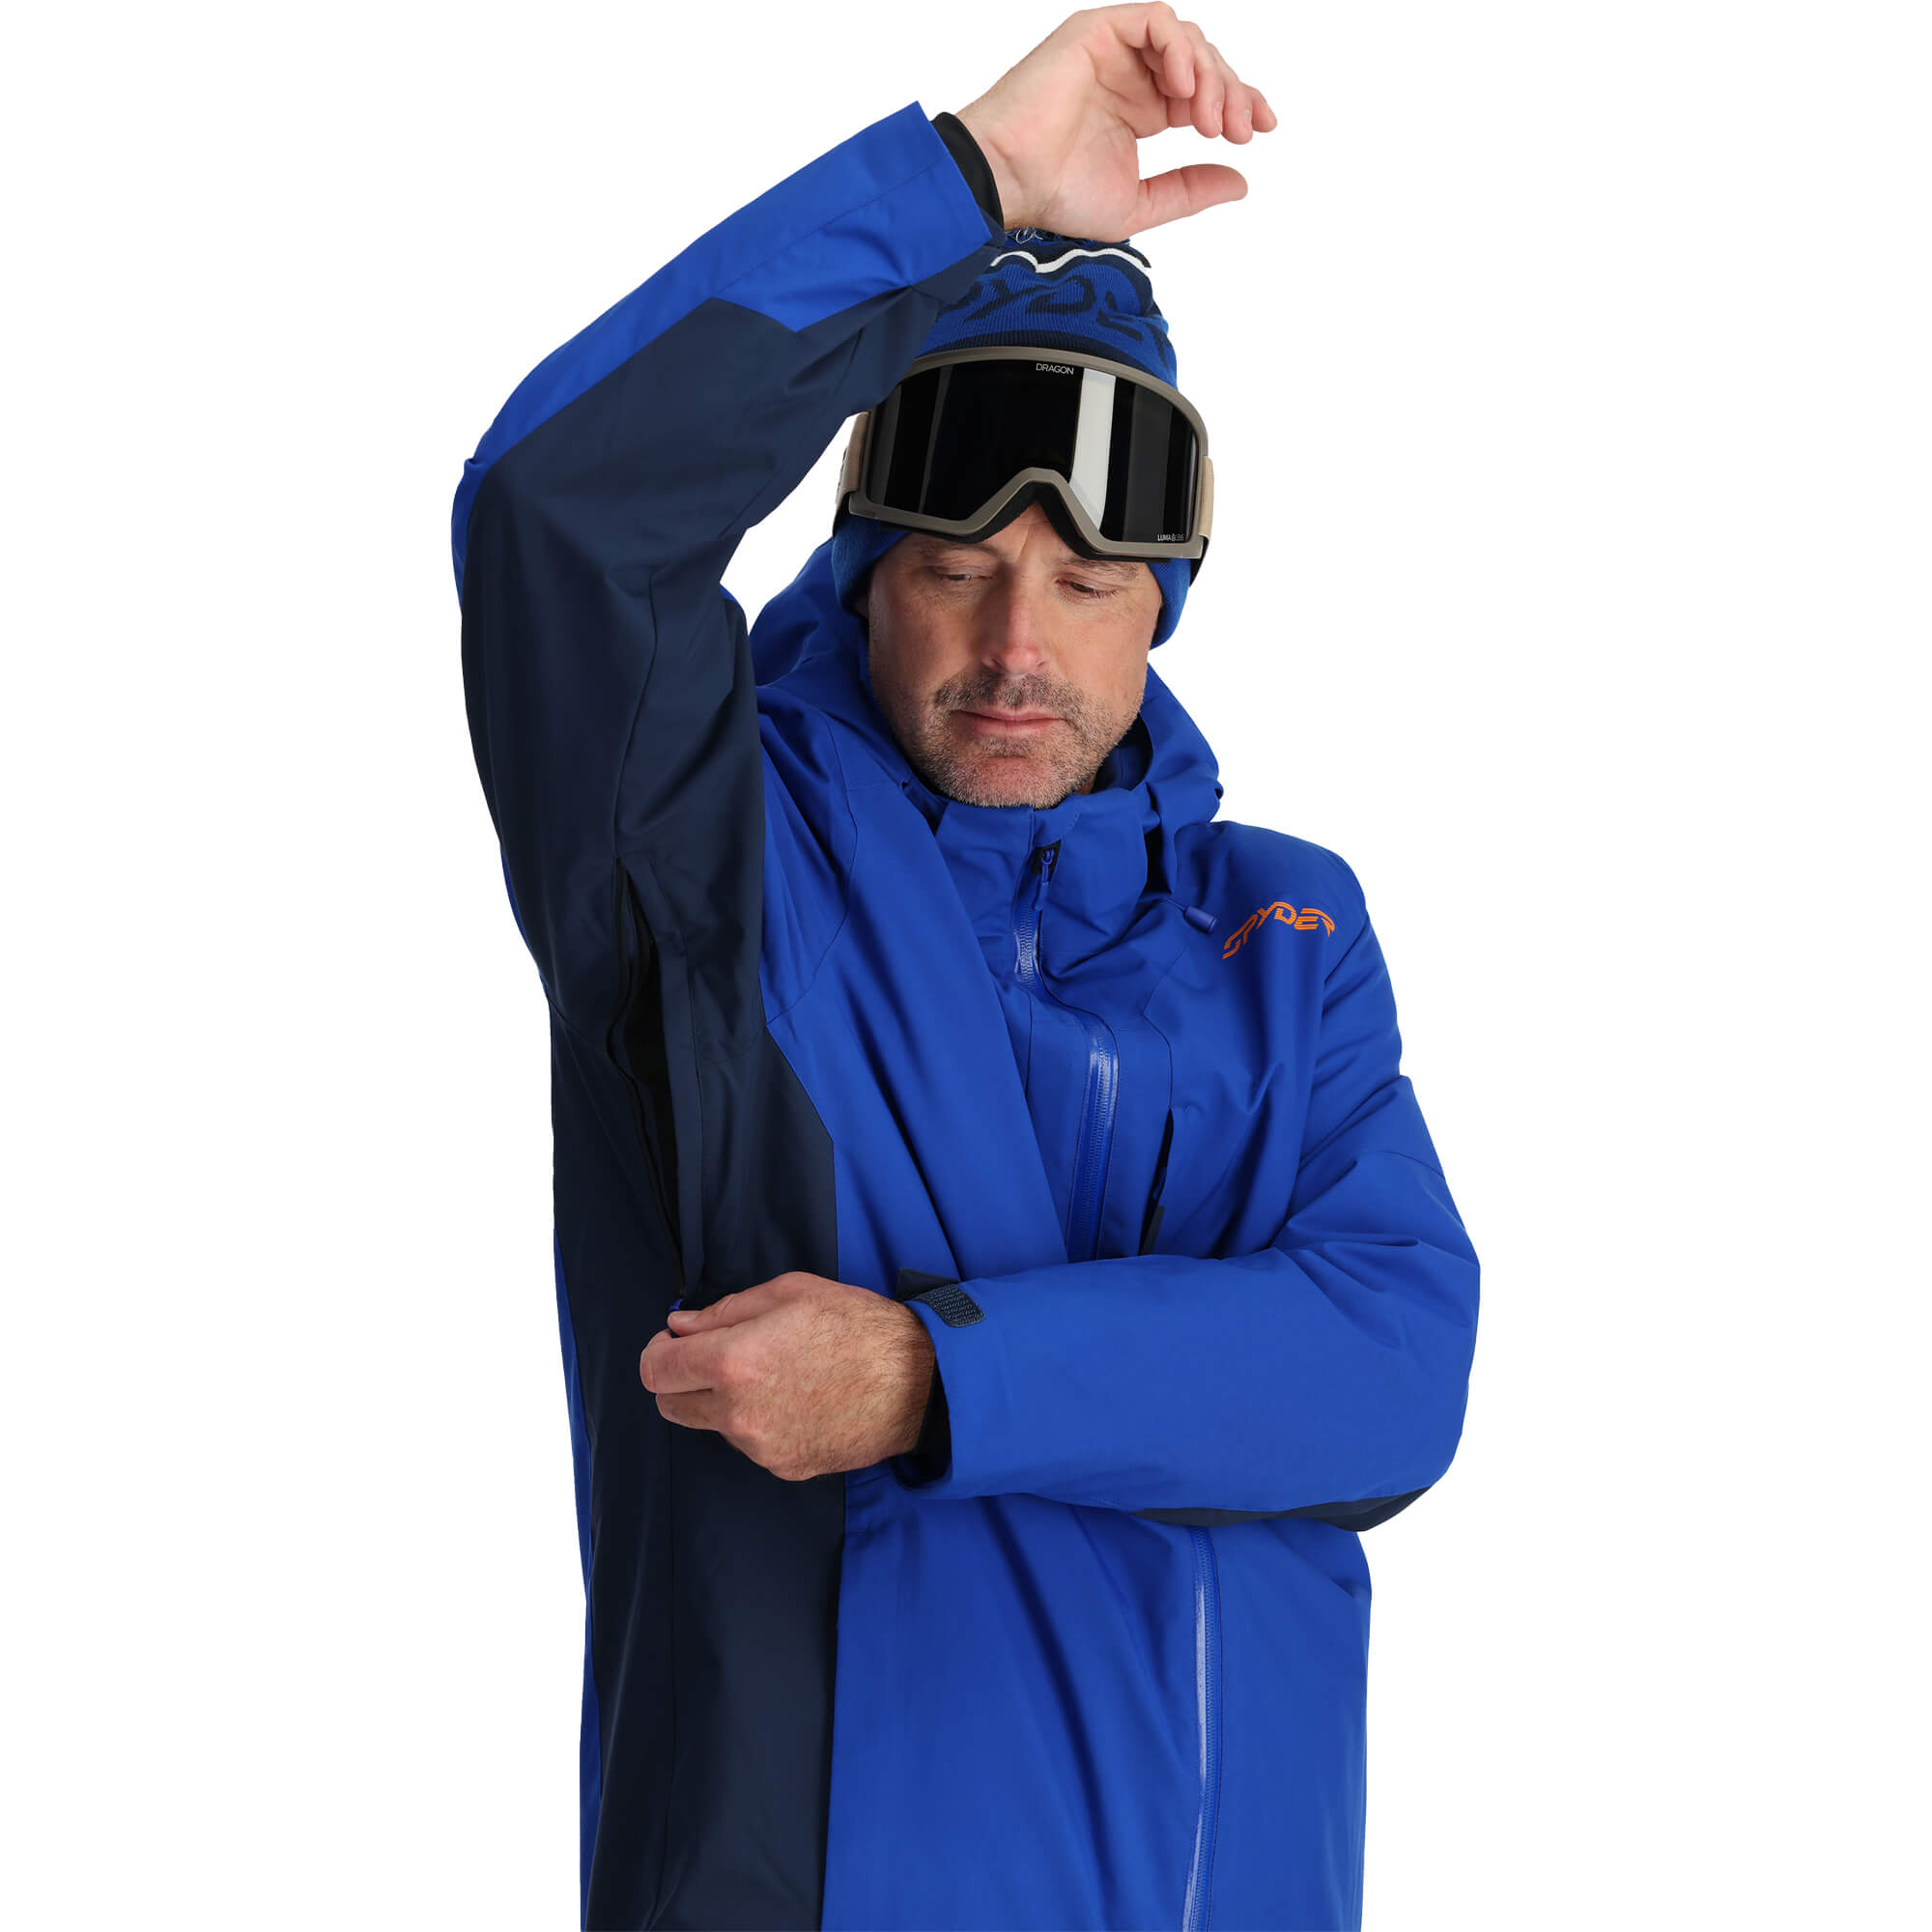 Spyder Primer Men's Ski/Snowboard Jacket